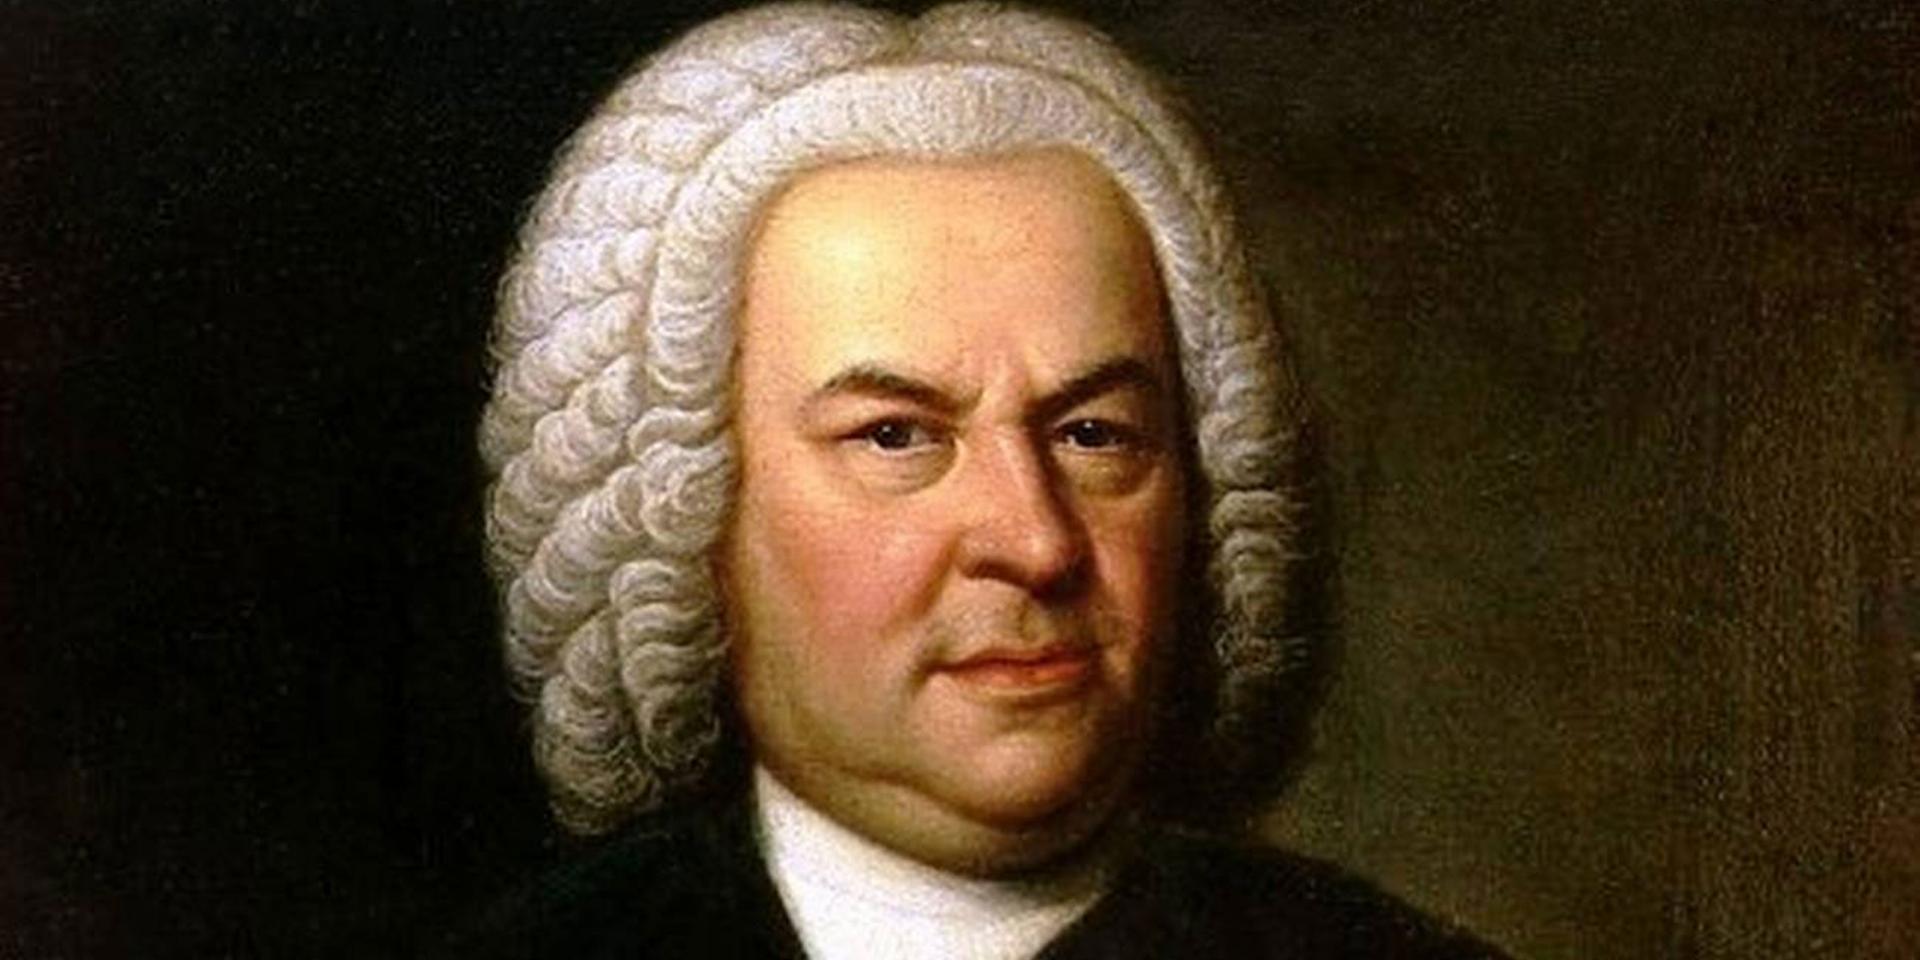 E. G. Haussmann, Portrait of Johann Sebastian Bach, 1748